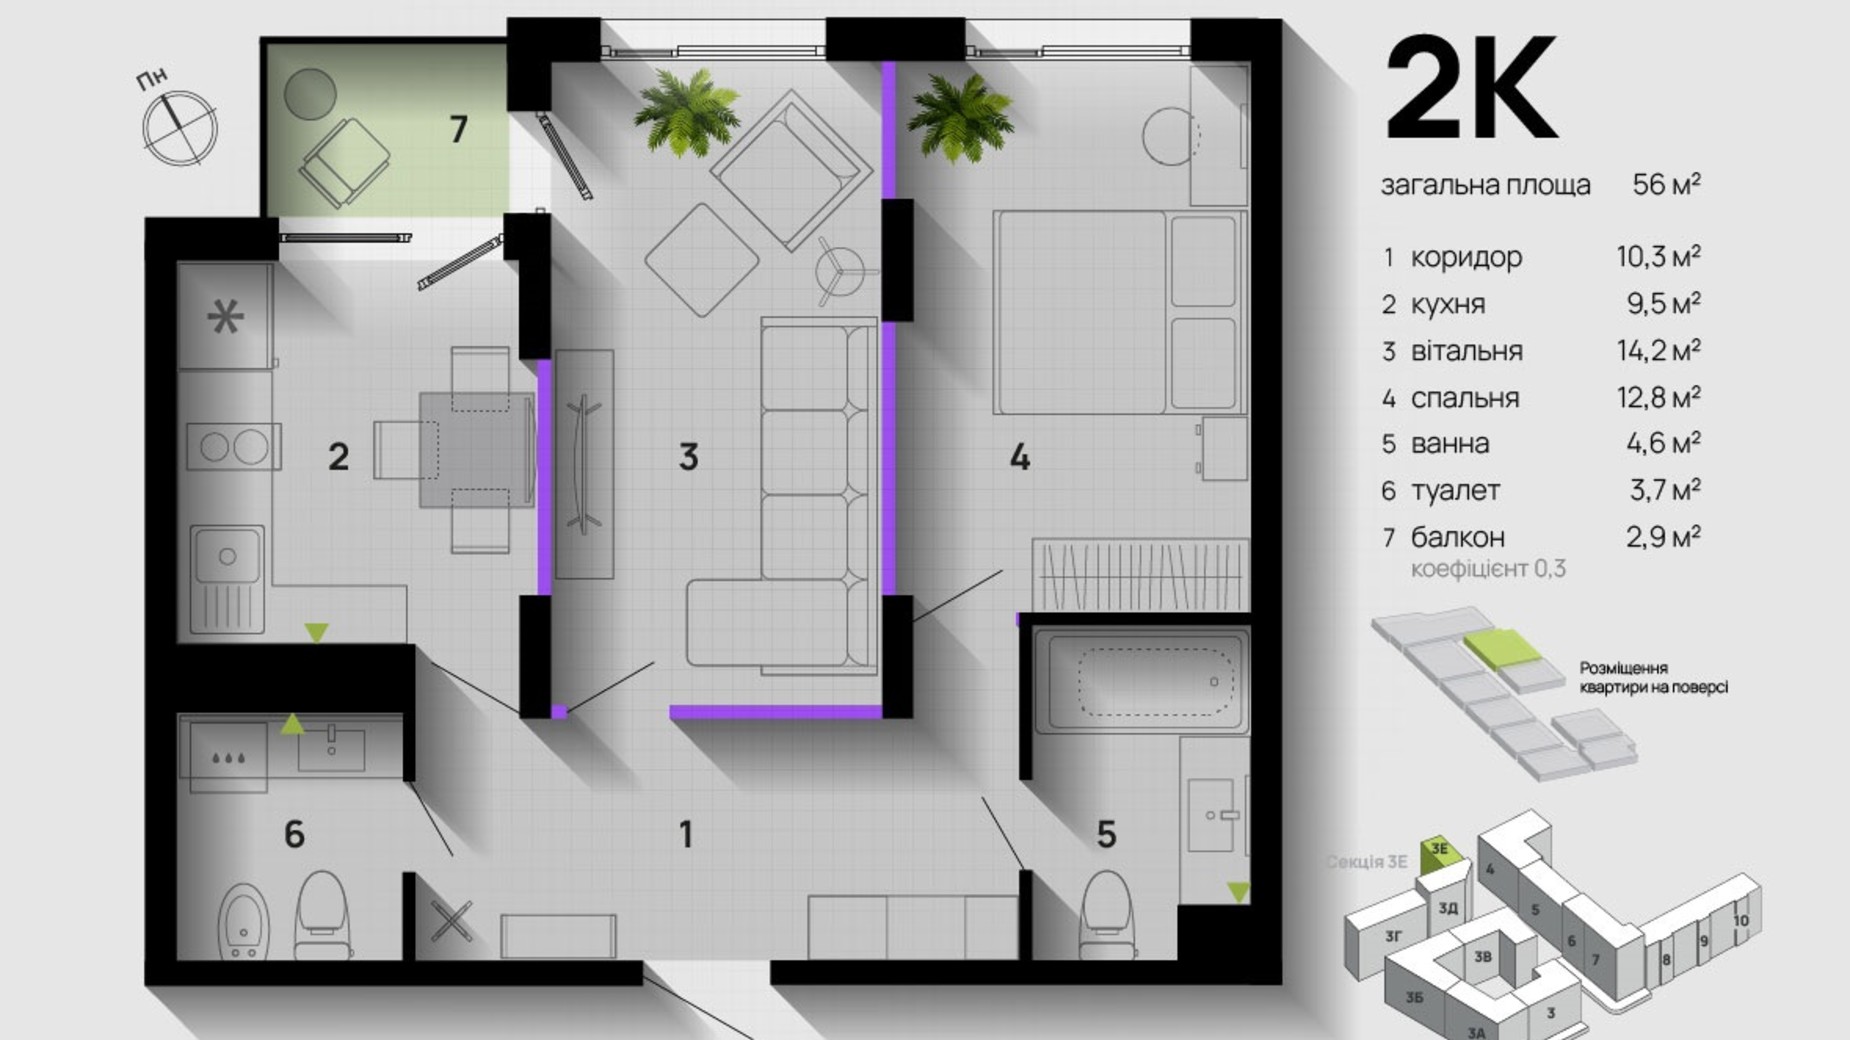 Планировка 2-комнатной квартиры в ЖК Парковая Аллея 56 м², фото 611379